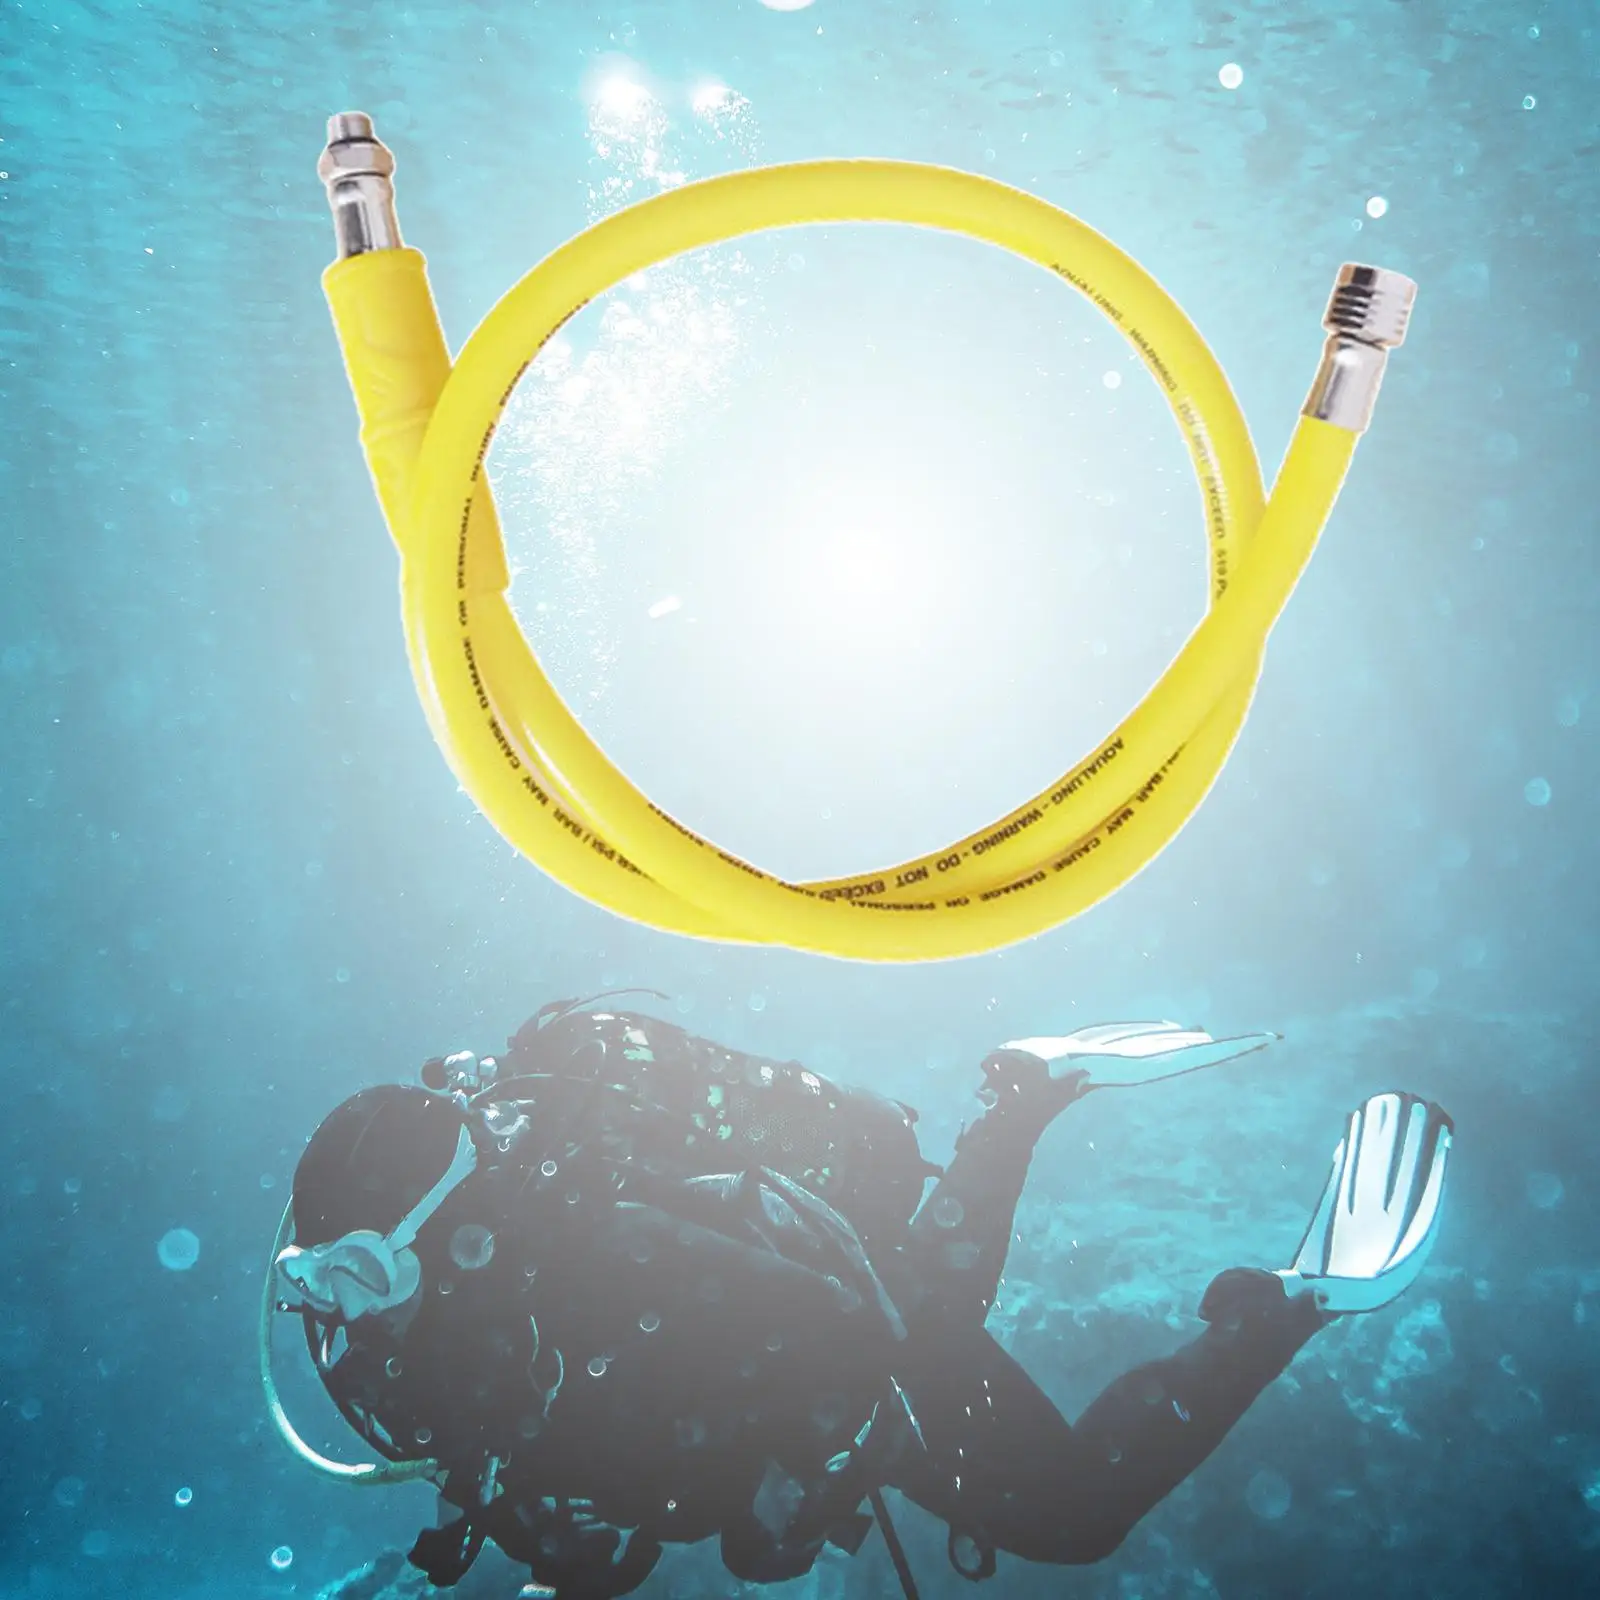 Submersible Medium Pressure Hose Scuba Diving Regulator for Snorkeling